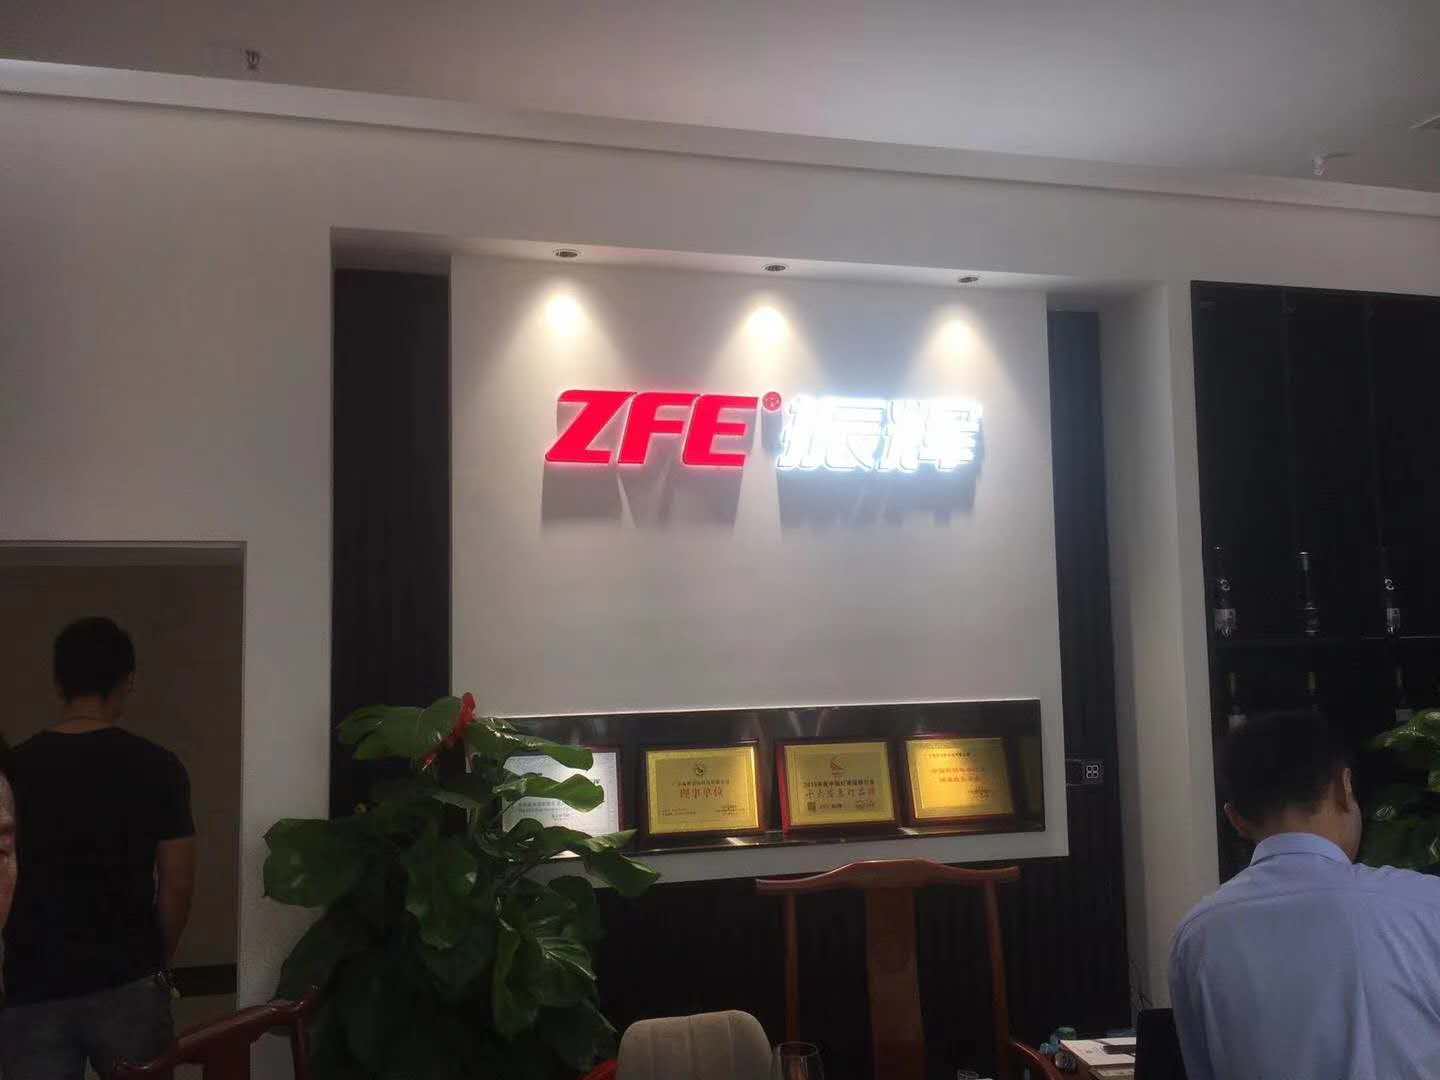 ZFE empresa - Guzhen loja em 9 de outubro, operação experimental, bem-vindo para visitar as negociações comerciais